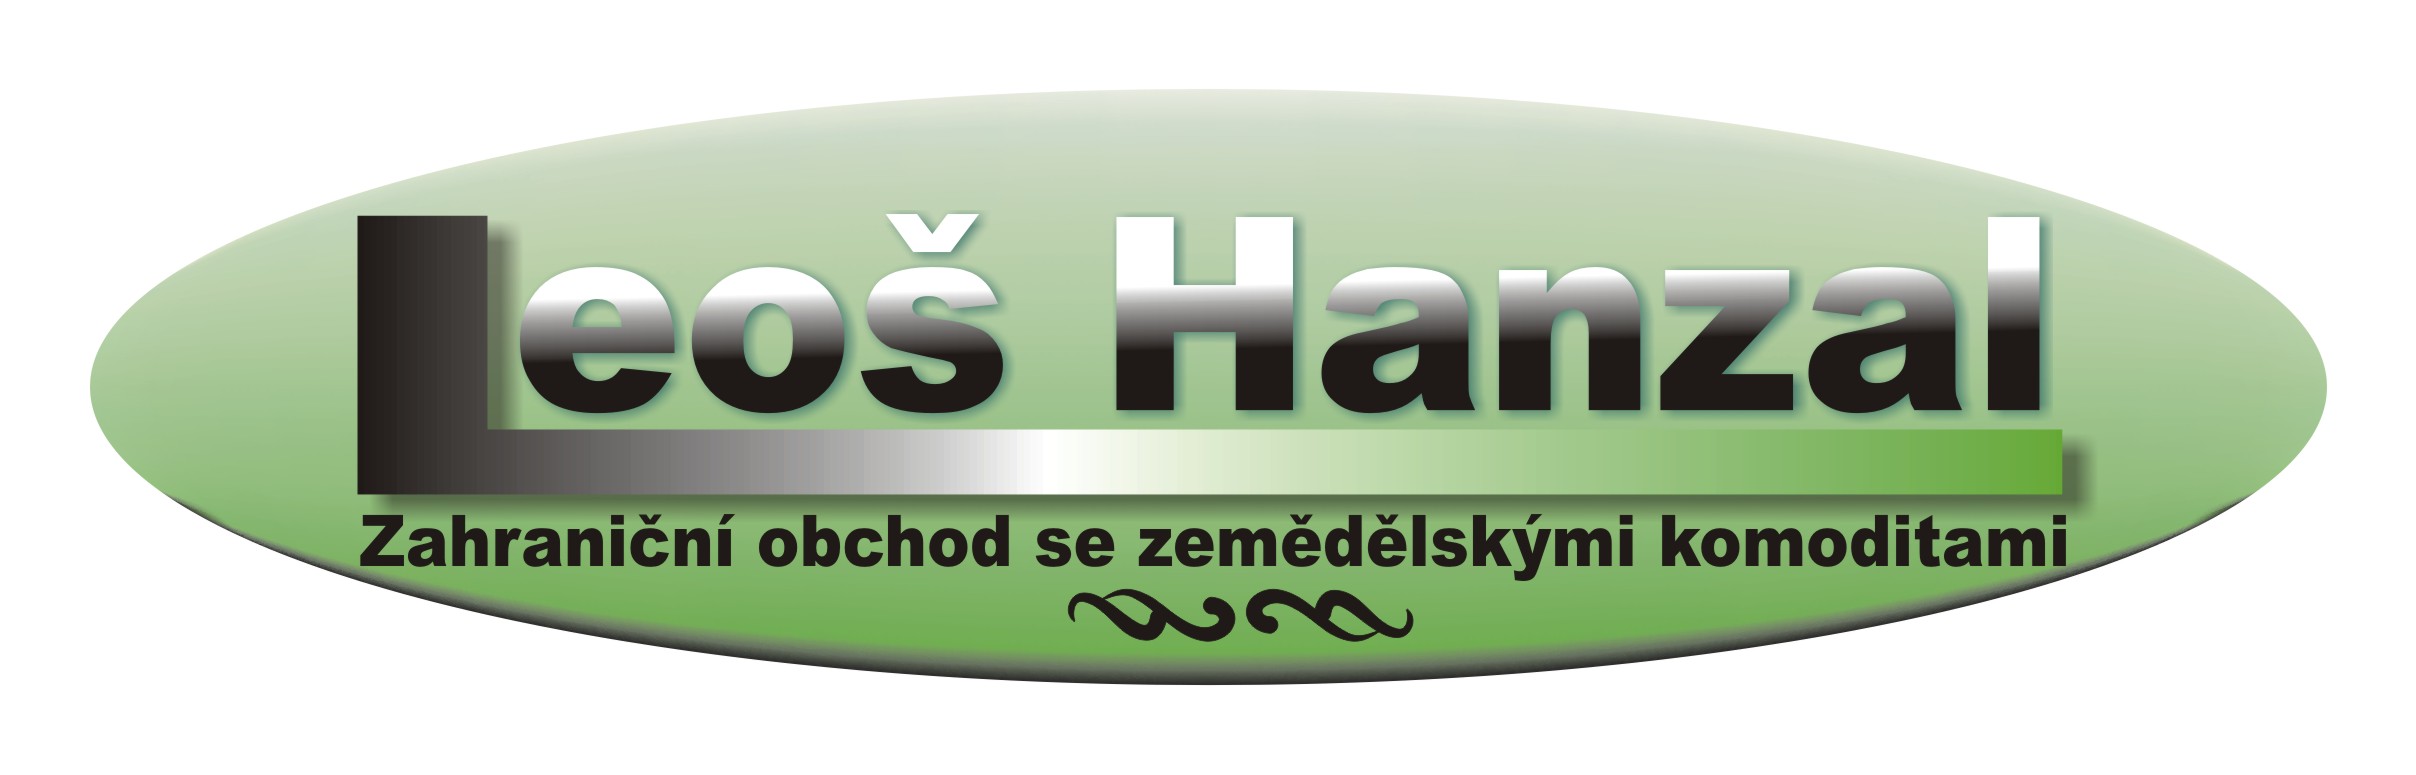 Hanzal Leoš logo.jpg